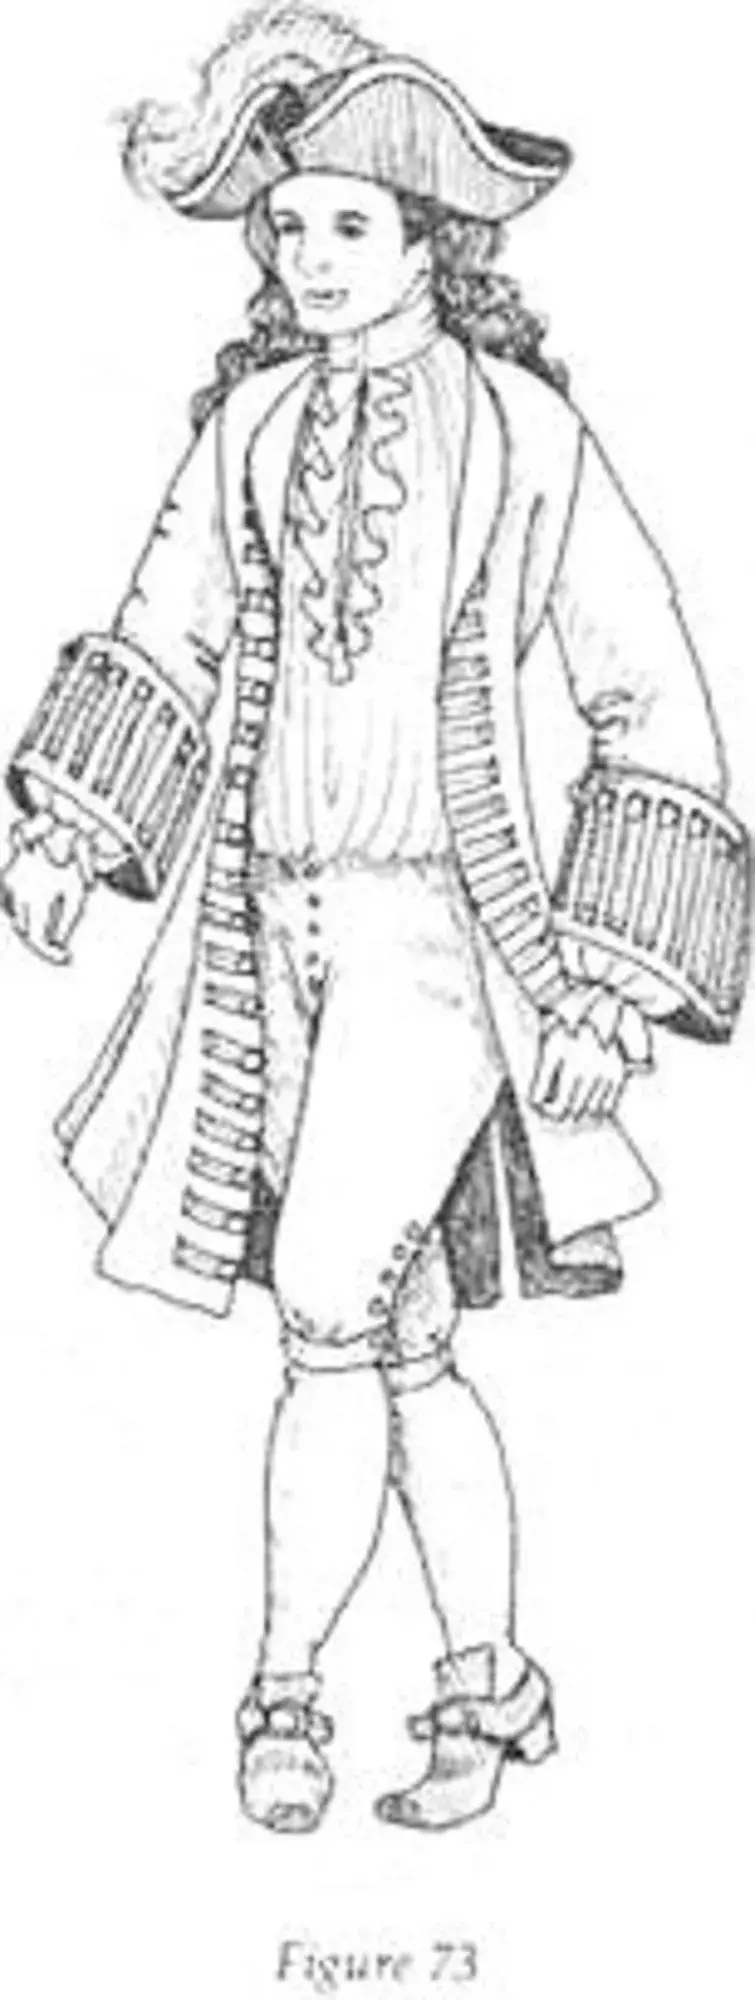 Костюм 17 века рисунок. Мужской костюм эпохи Барокко 17 век. Эскиз костюма Западной Европы 17 века. Мужской костюм 17 века Европы Западной Европы.